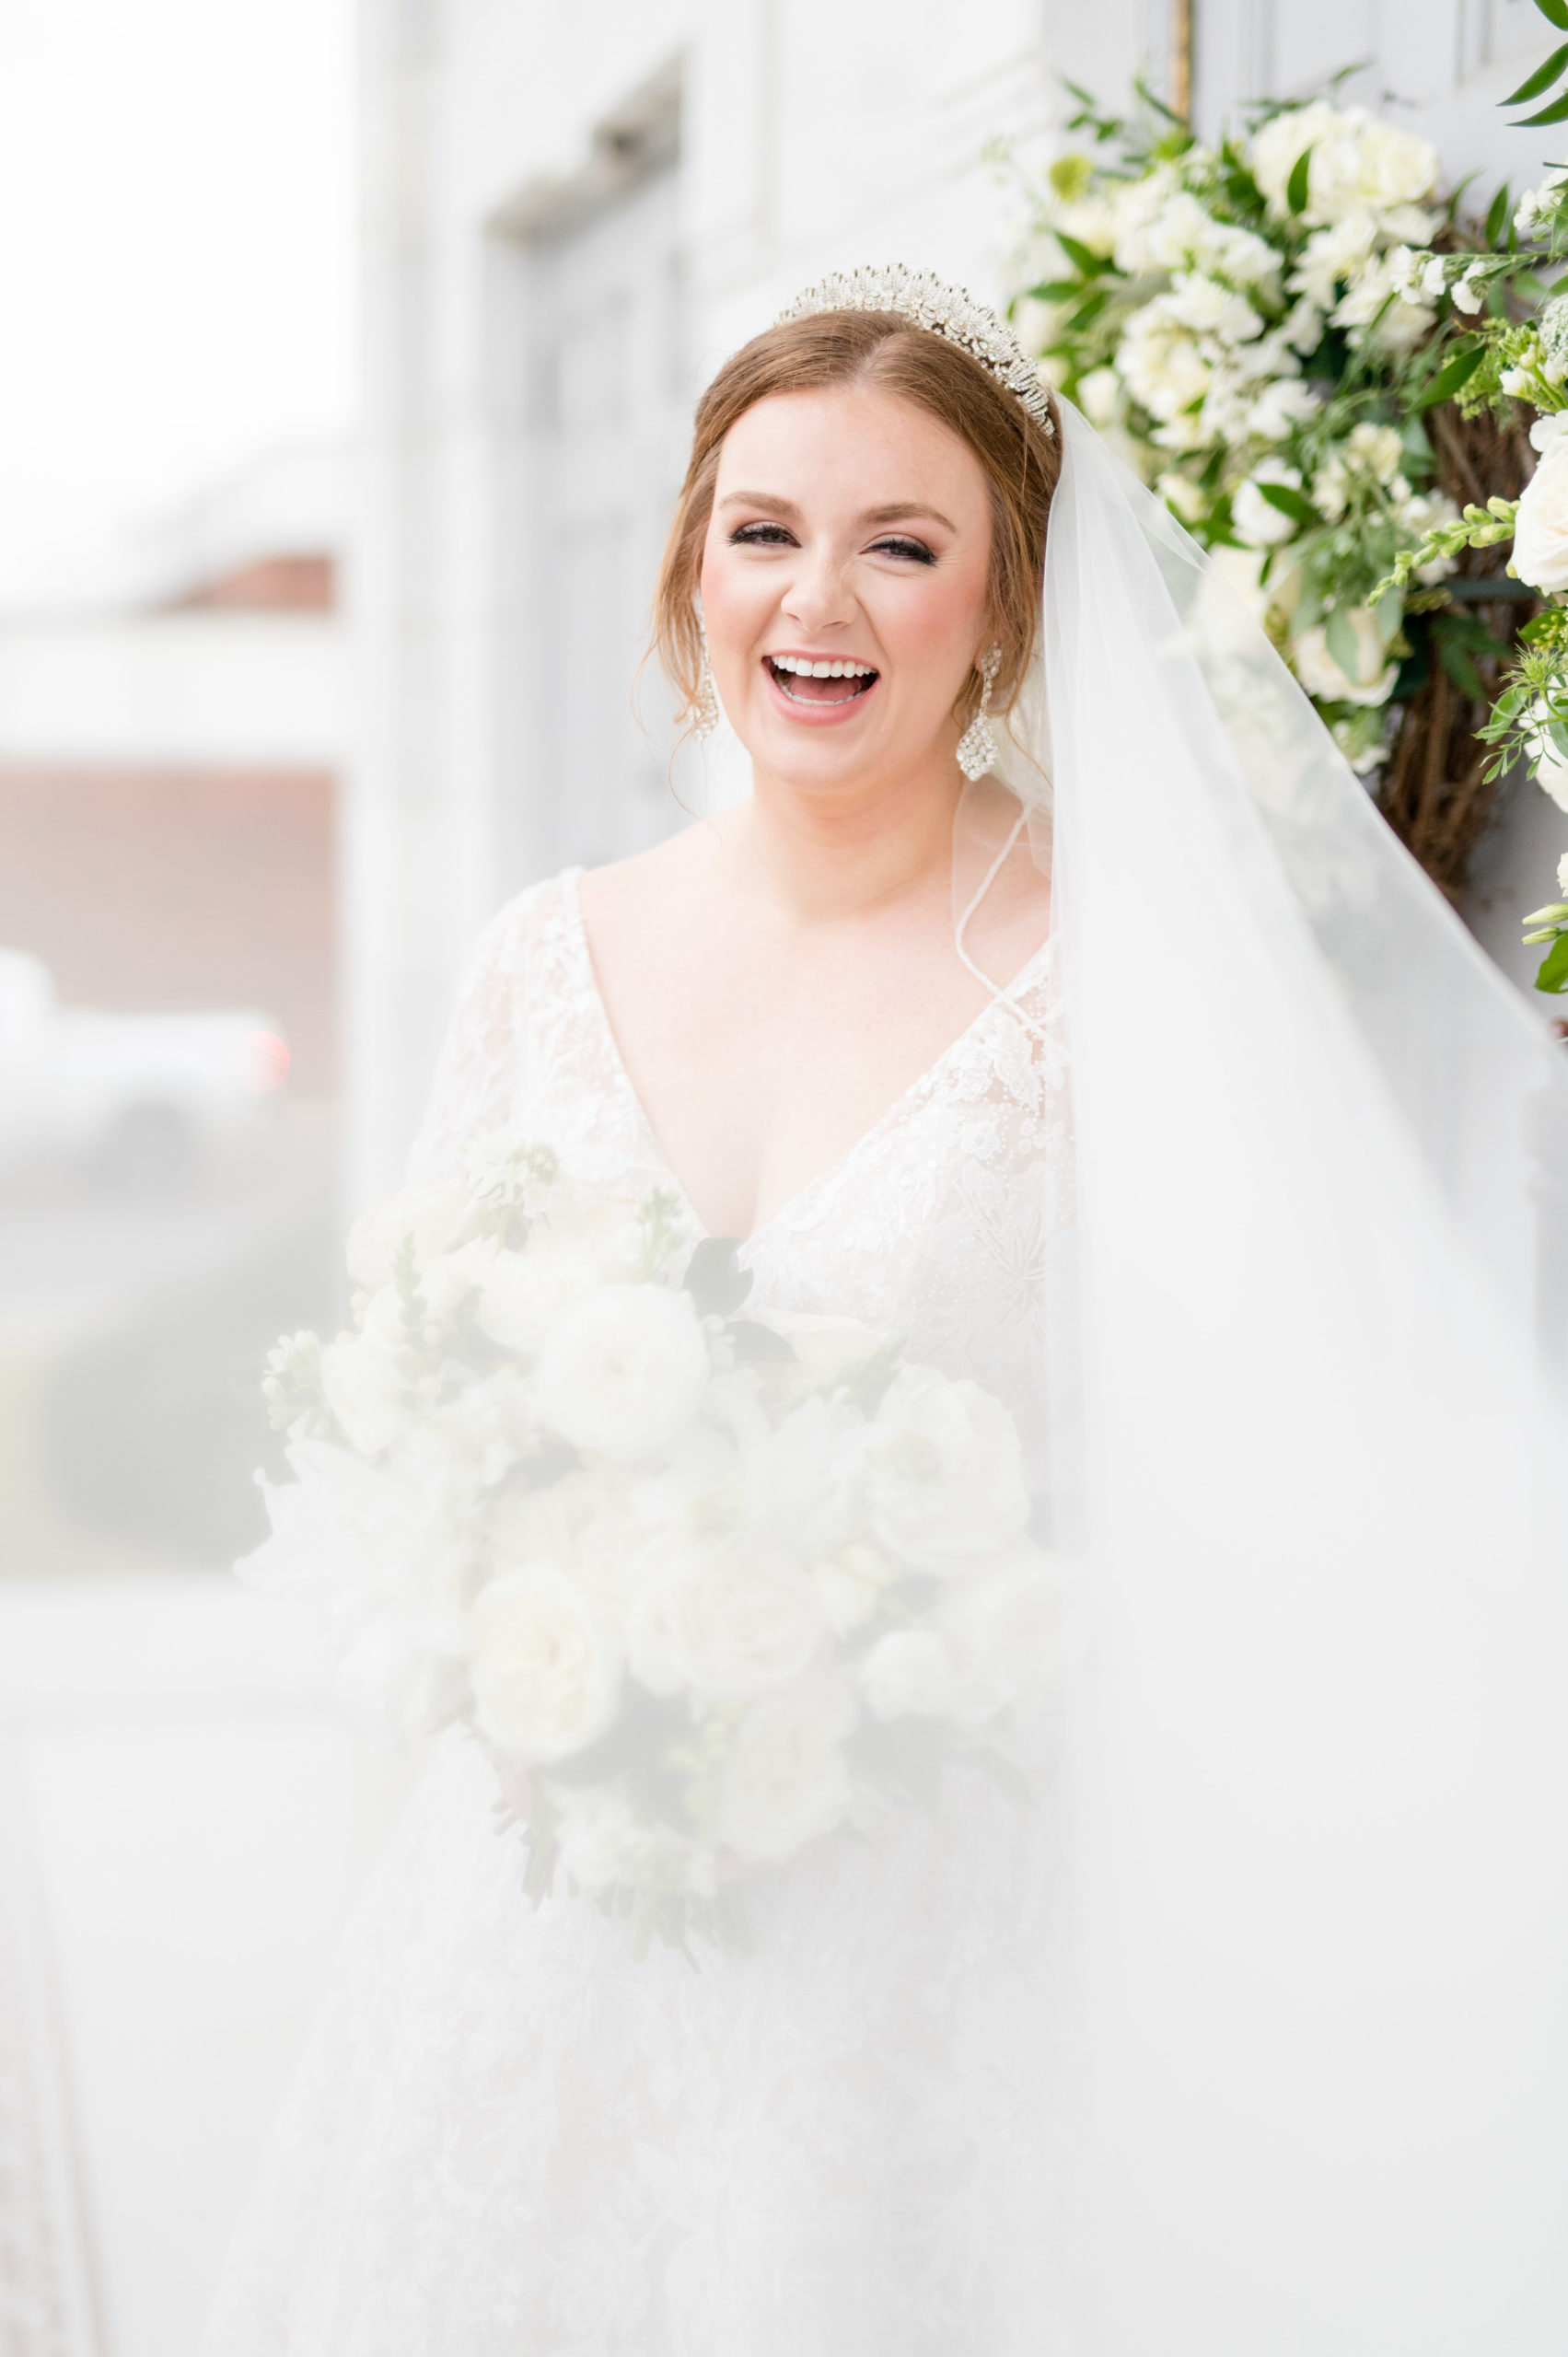 Bride laughs at camera while veil blows.